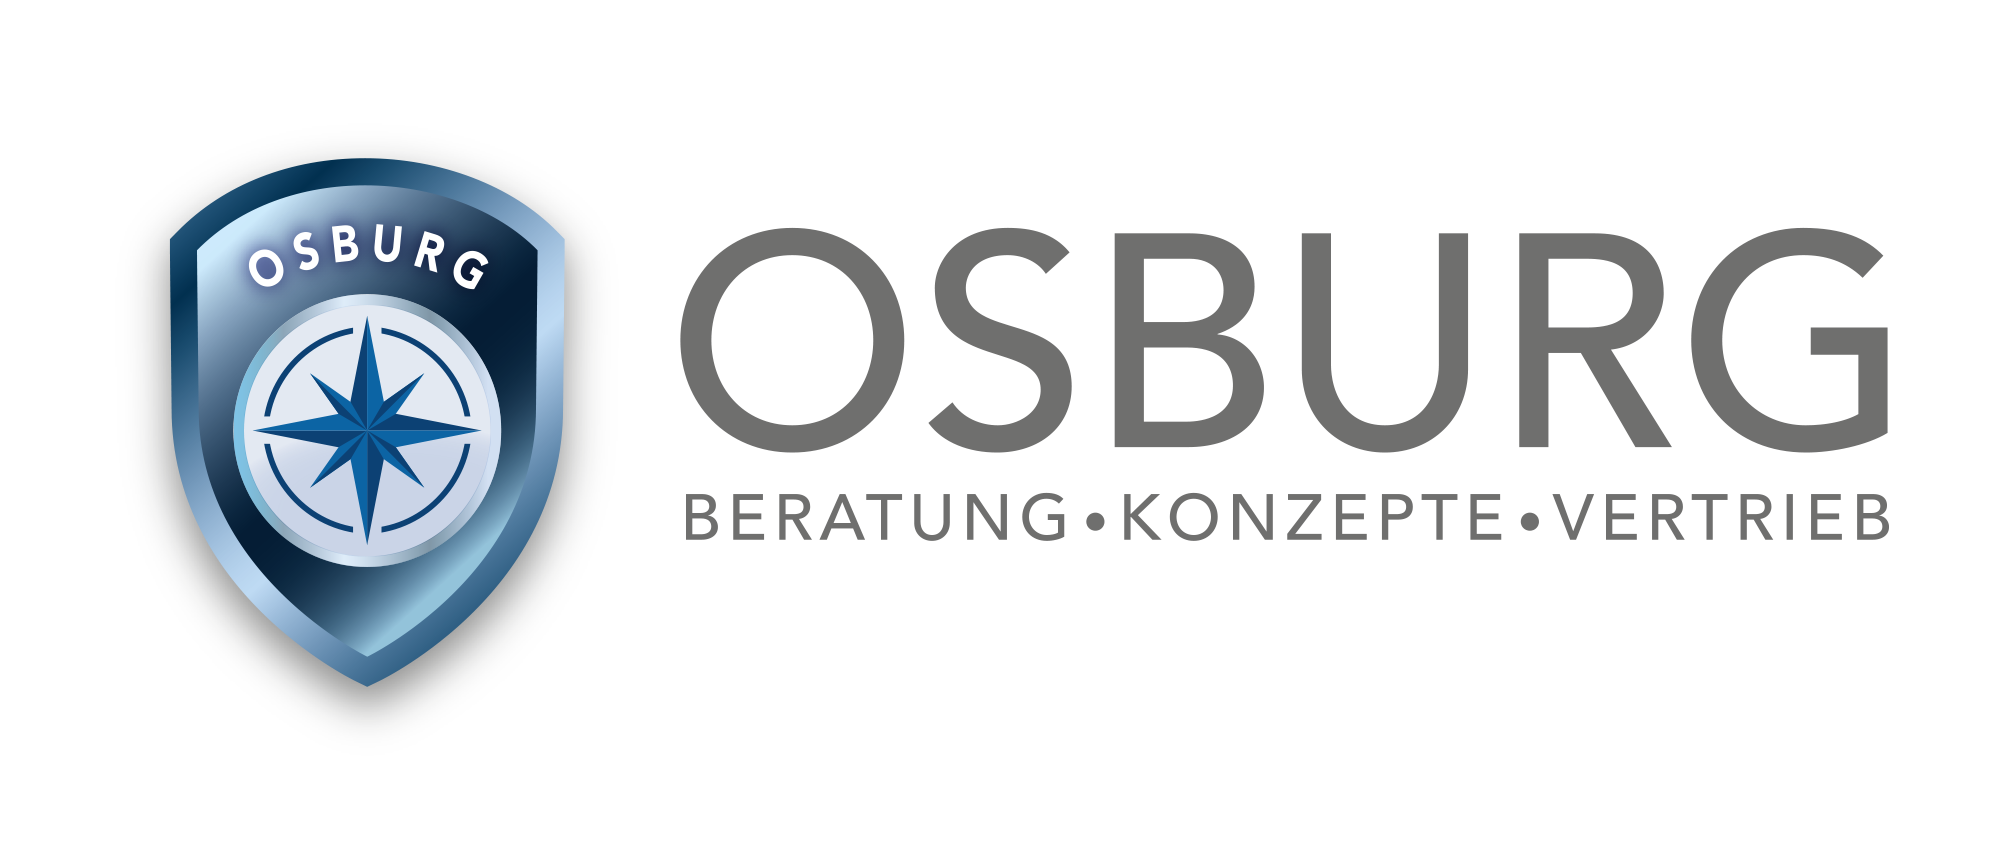 OSBURG – Beratung.Konzepte.Vertrieb